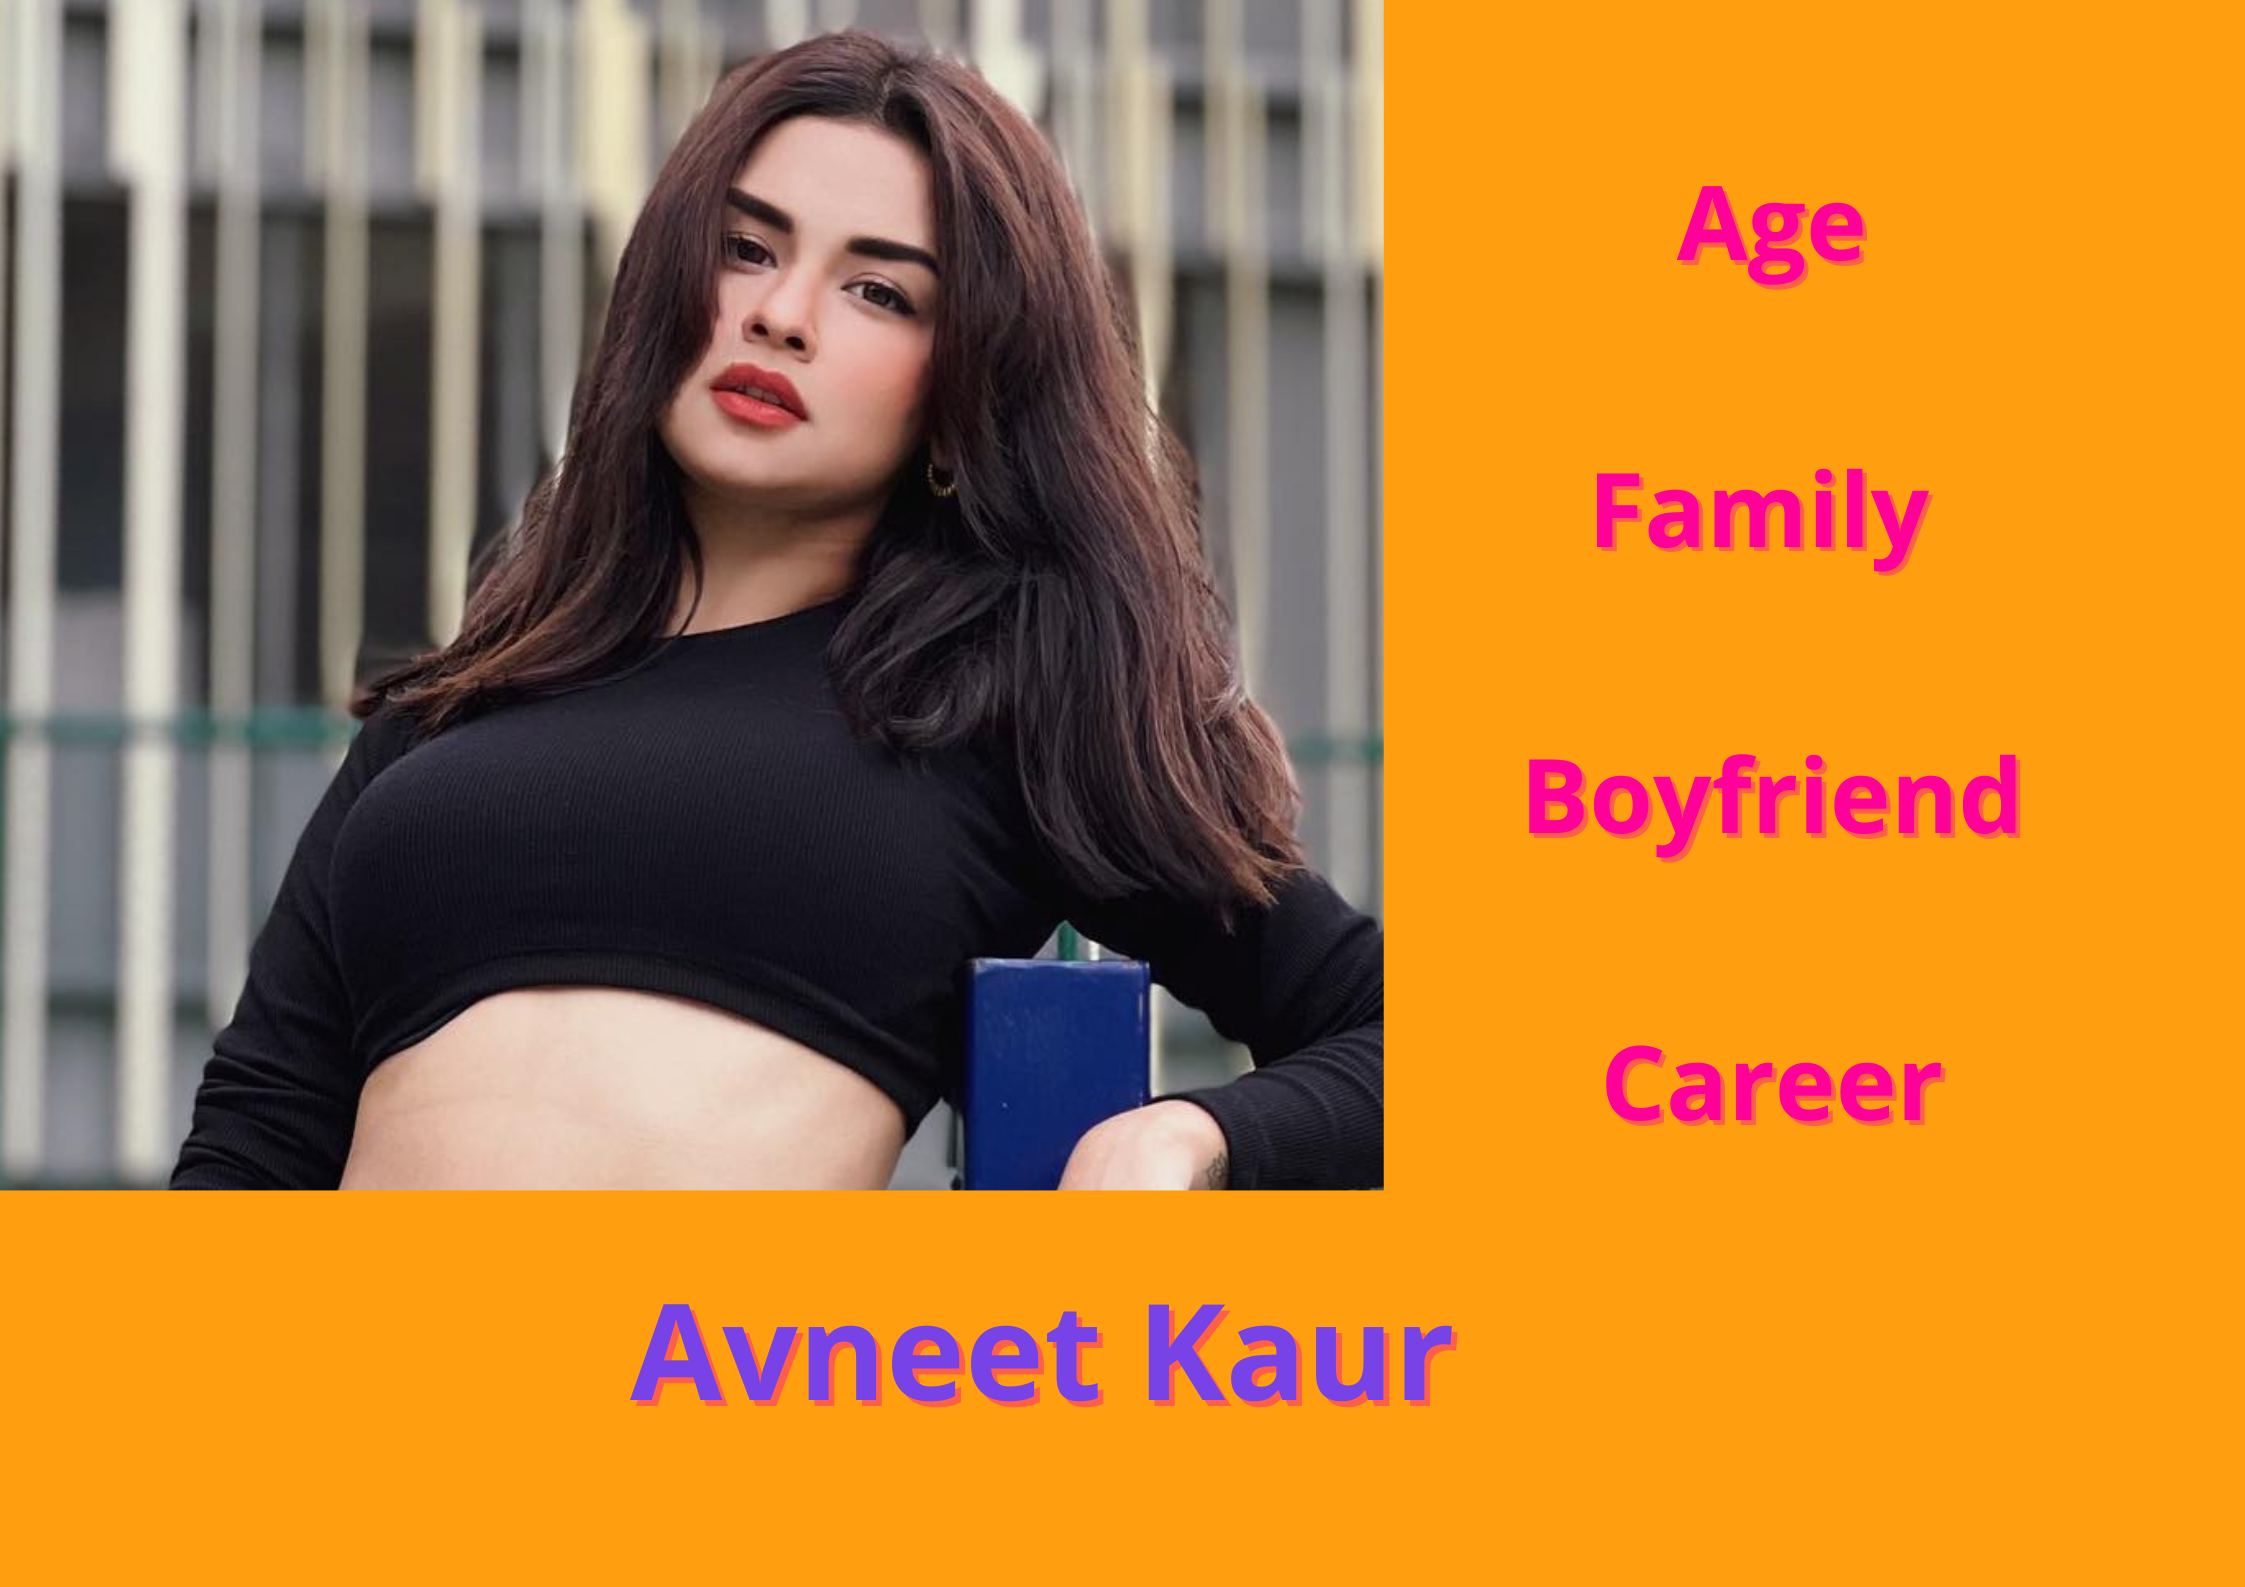 Avneet Kaur Bio Age Height Boyfriend Worth